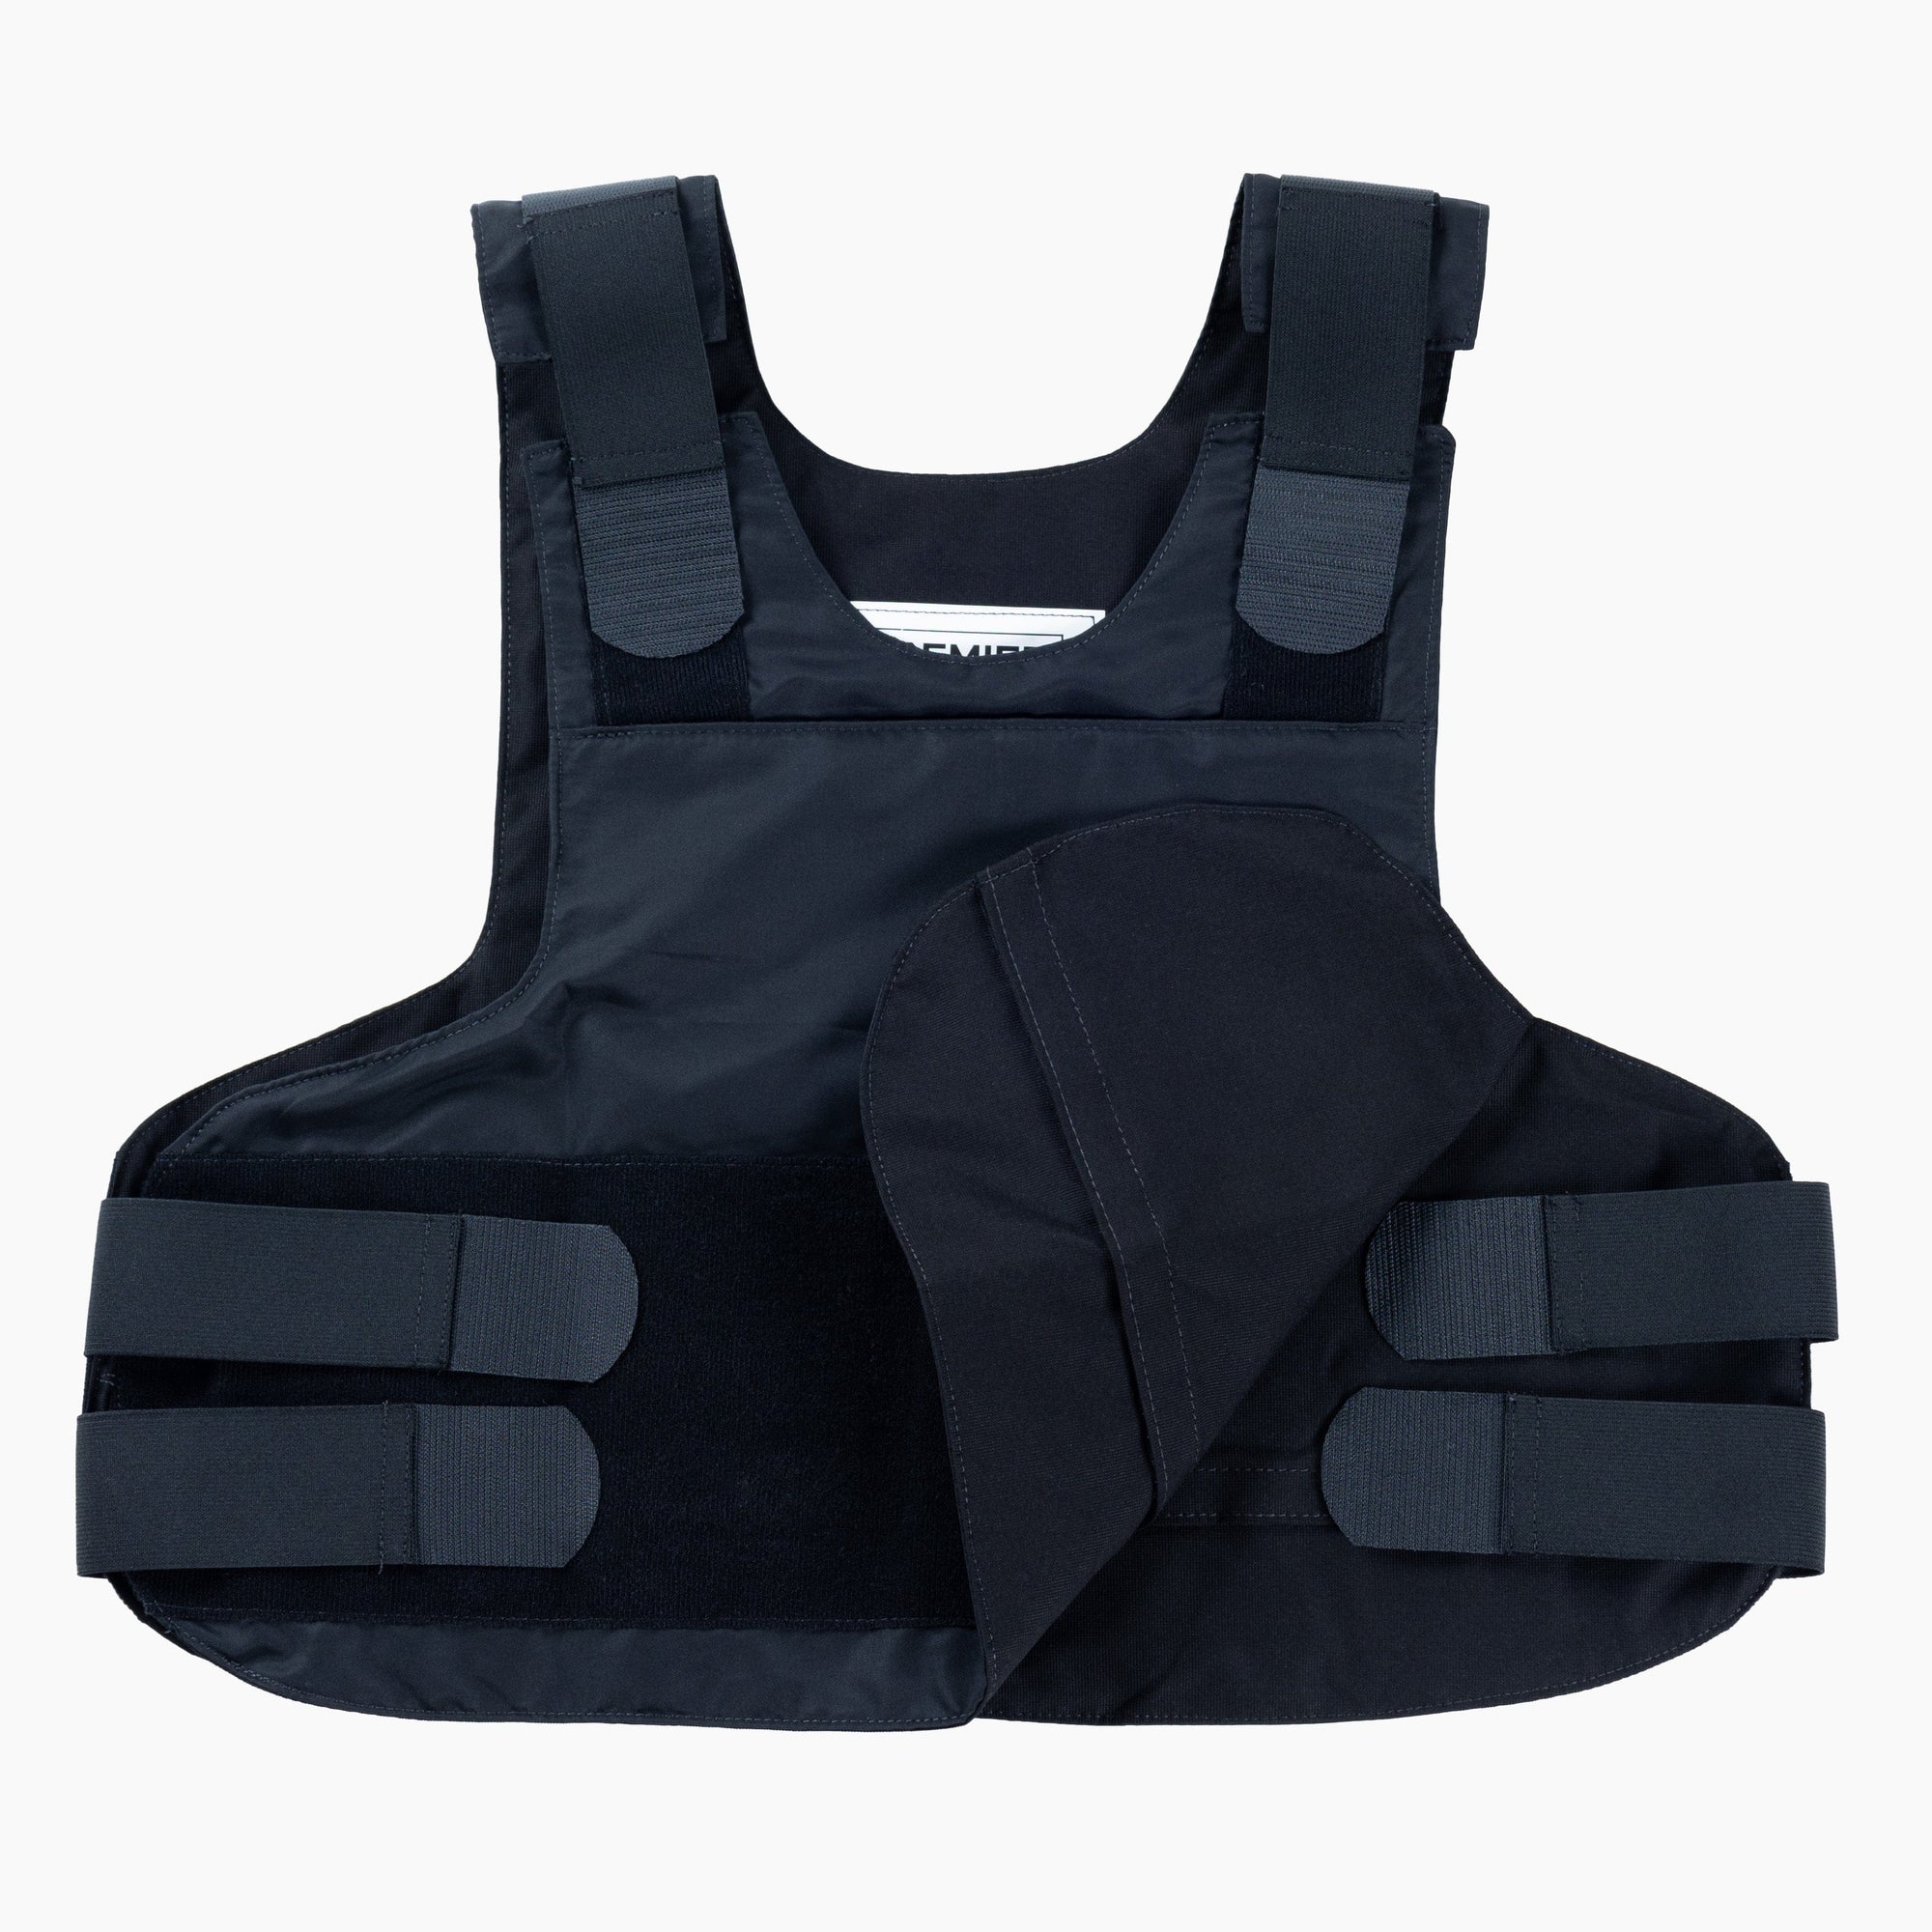 Hybrid Concealment Vest - Carrier Only